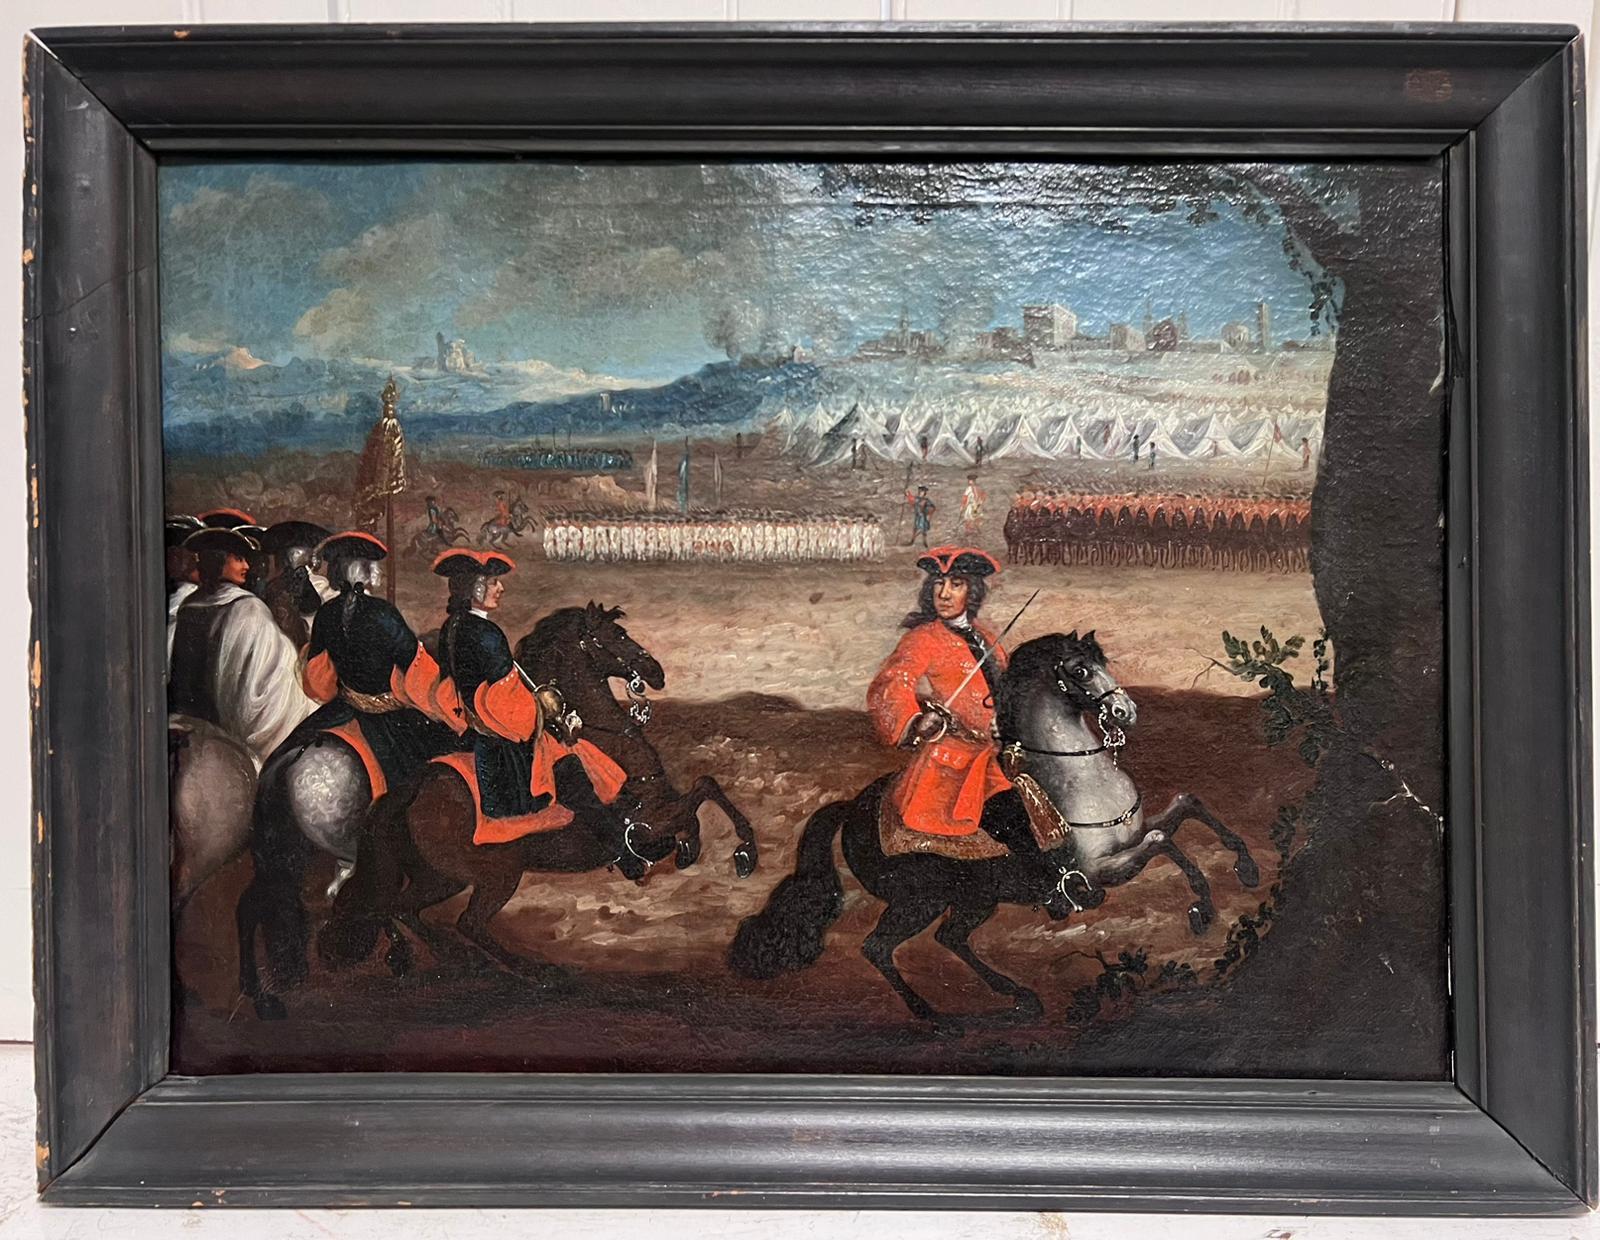 Französisches Ölgemälde, Kavallerie-Militärschlachten-Encampment-Soldaten zu Pferd, 18. Jahrhundert – Painting von 1700's French Old Master